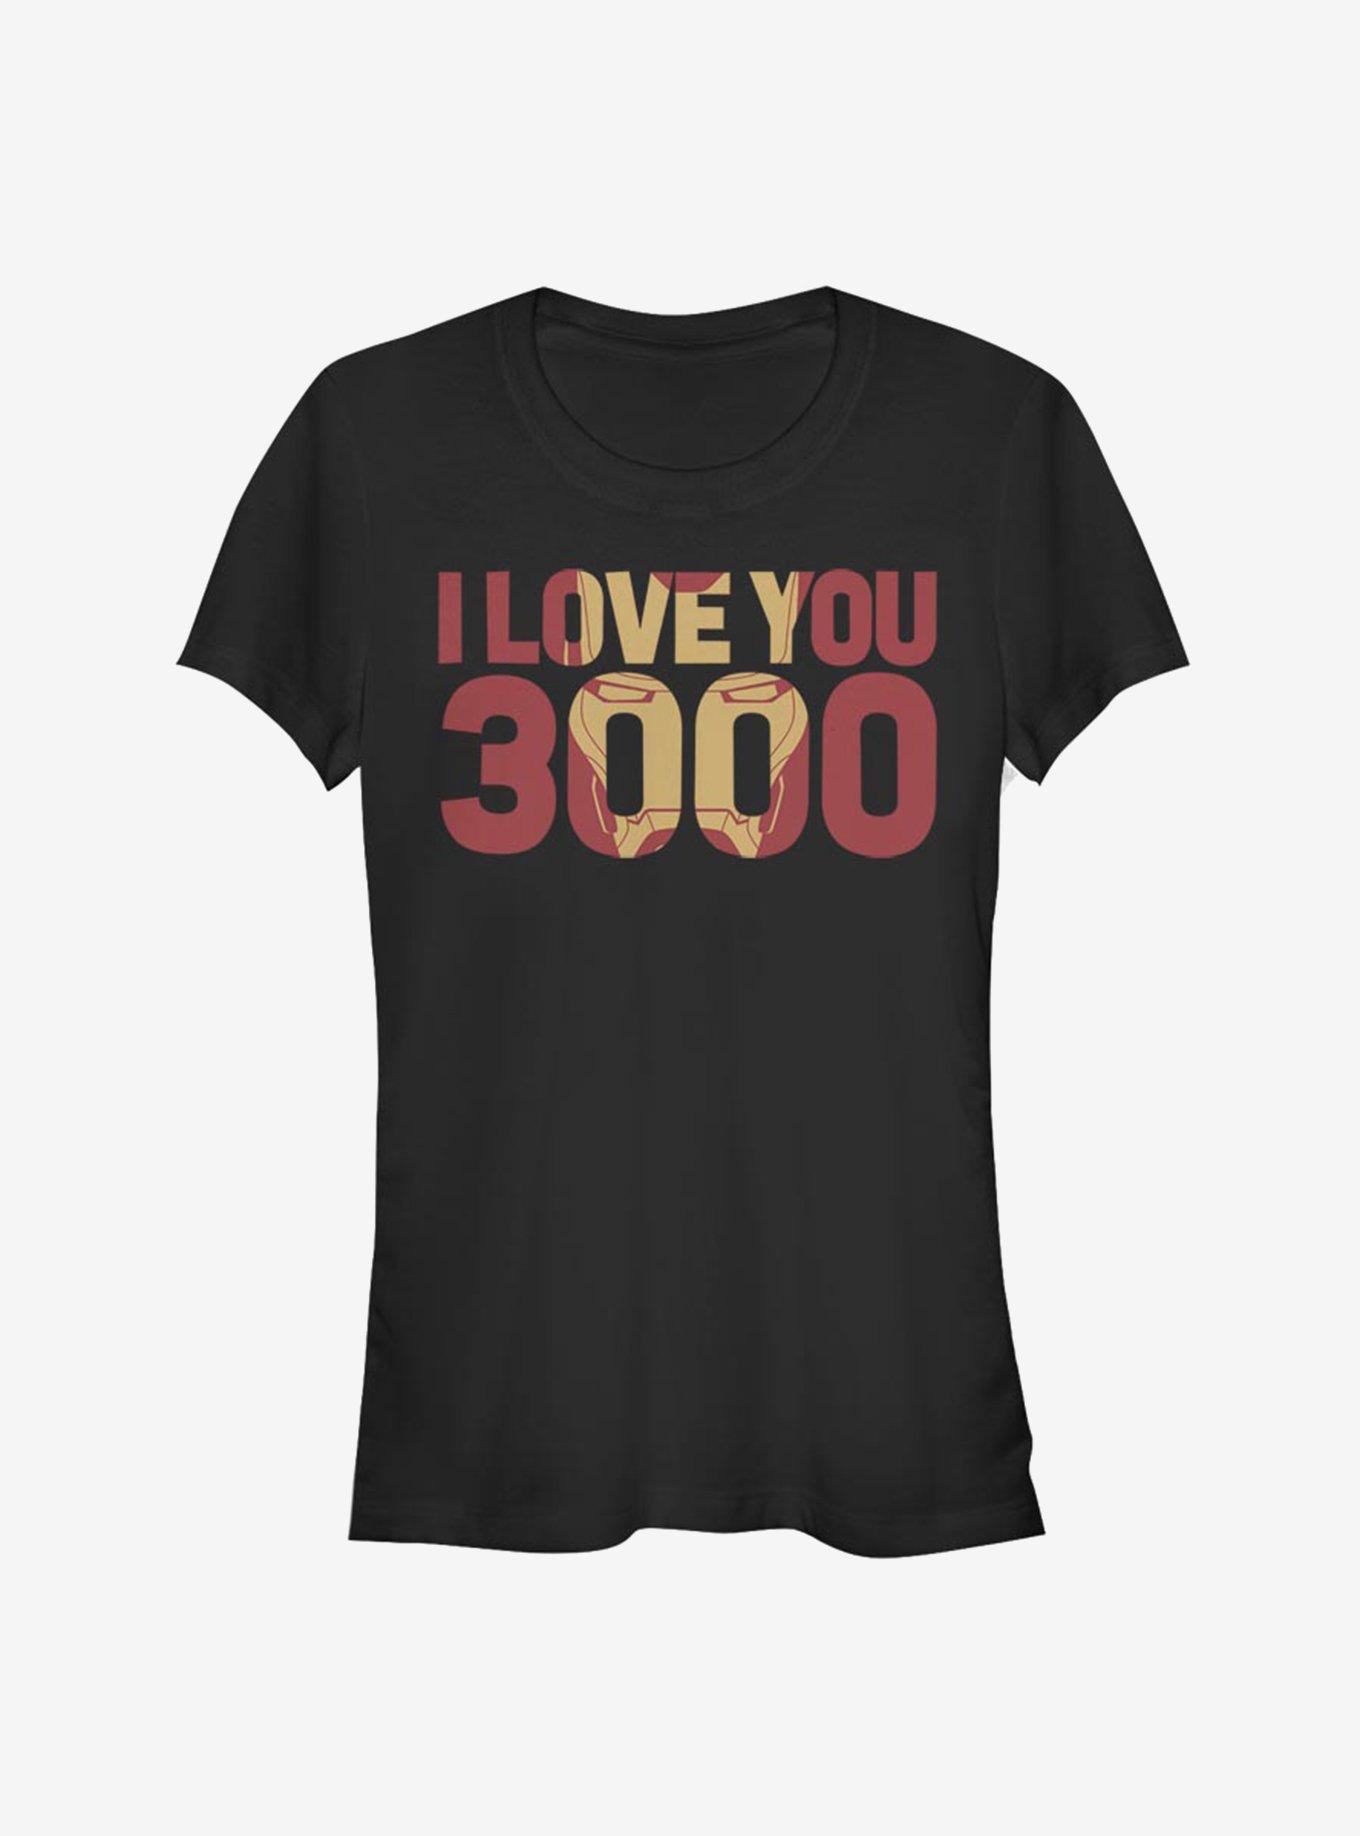 Marvel Avengers: Endgame Iron Man I Love You 3000 Girls T-Shirt | Hot Topic